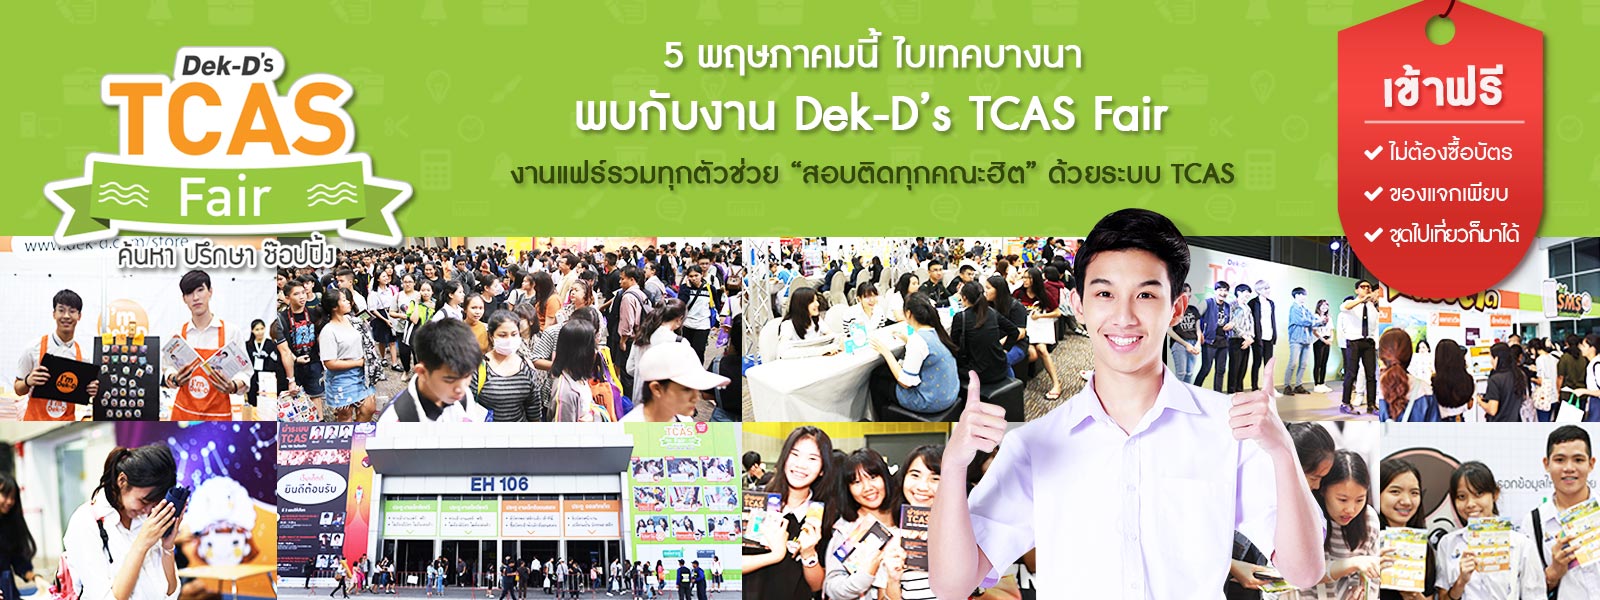 Dek-D´s TCAS Fair